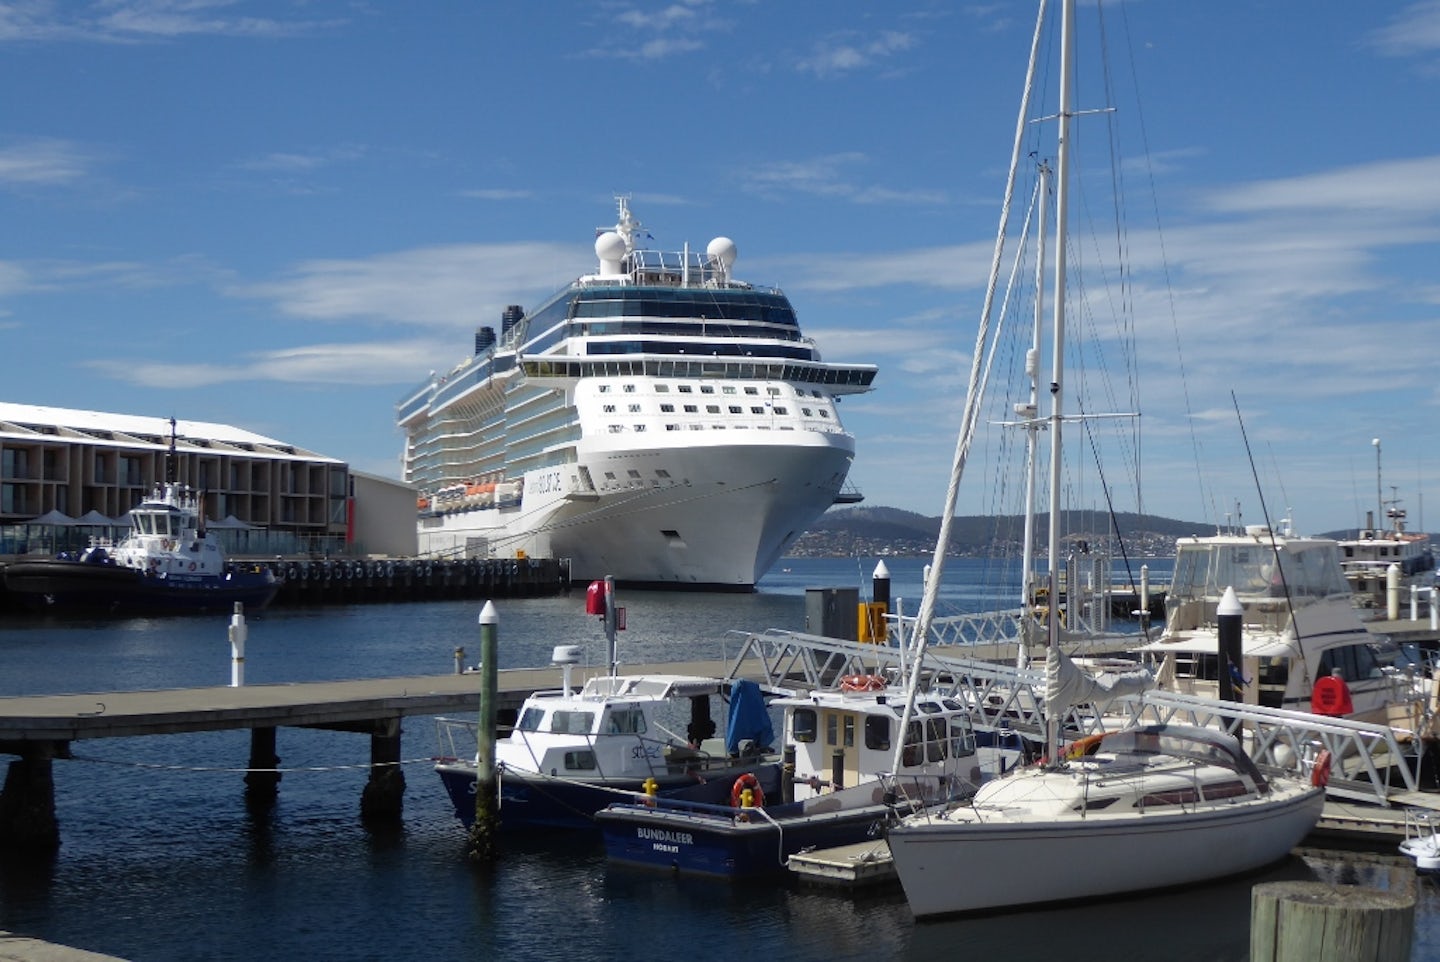 Celebrity Solstice docked in Hobart